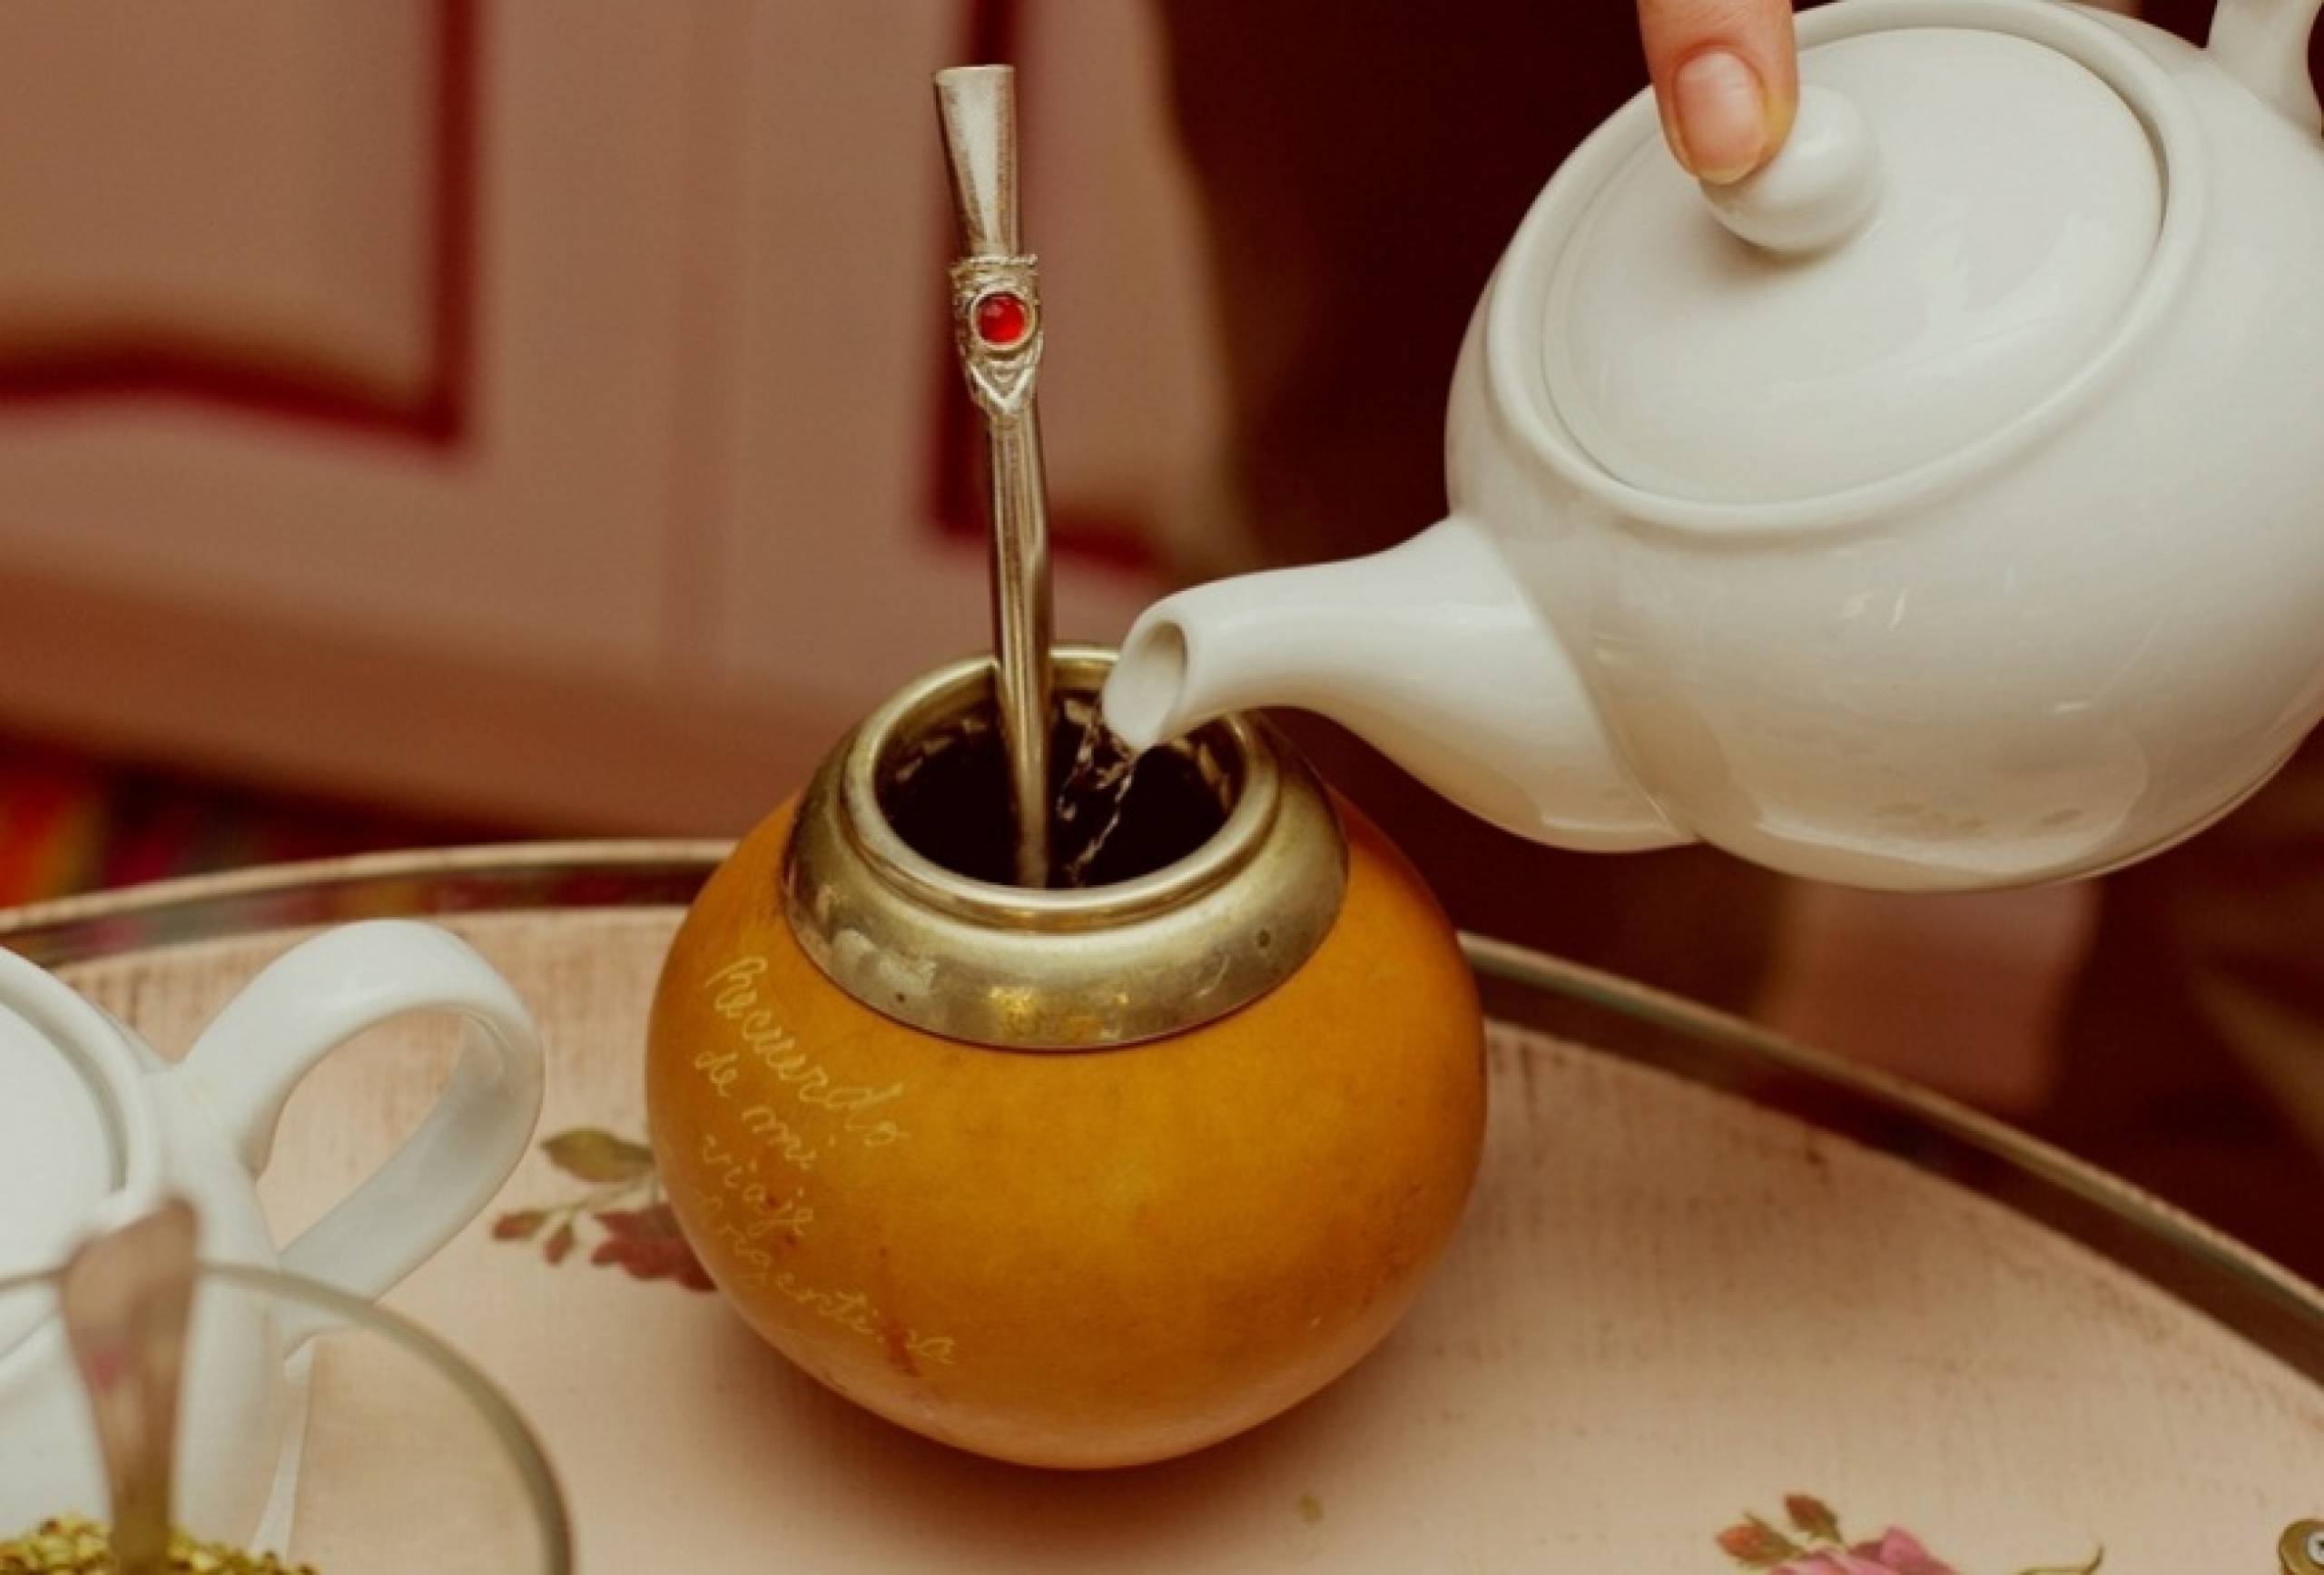 Все о мате - польза парагвайского чая, как его пить и чем отличается он от чая зеленого. какой может быть вред от мате: противопоказания - автор екатерина данилова - журнал женское мнение